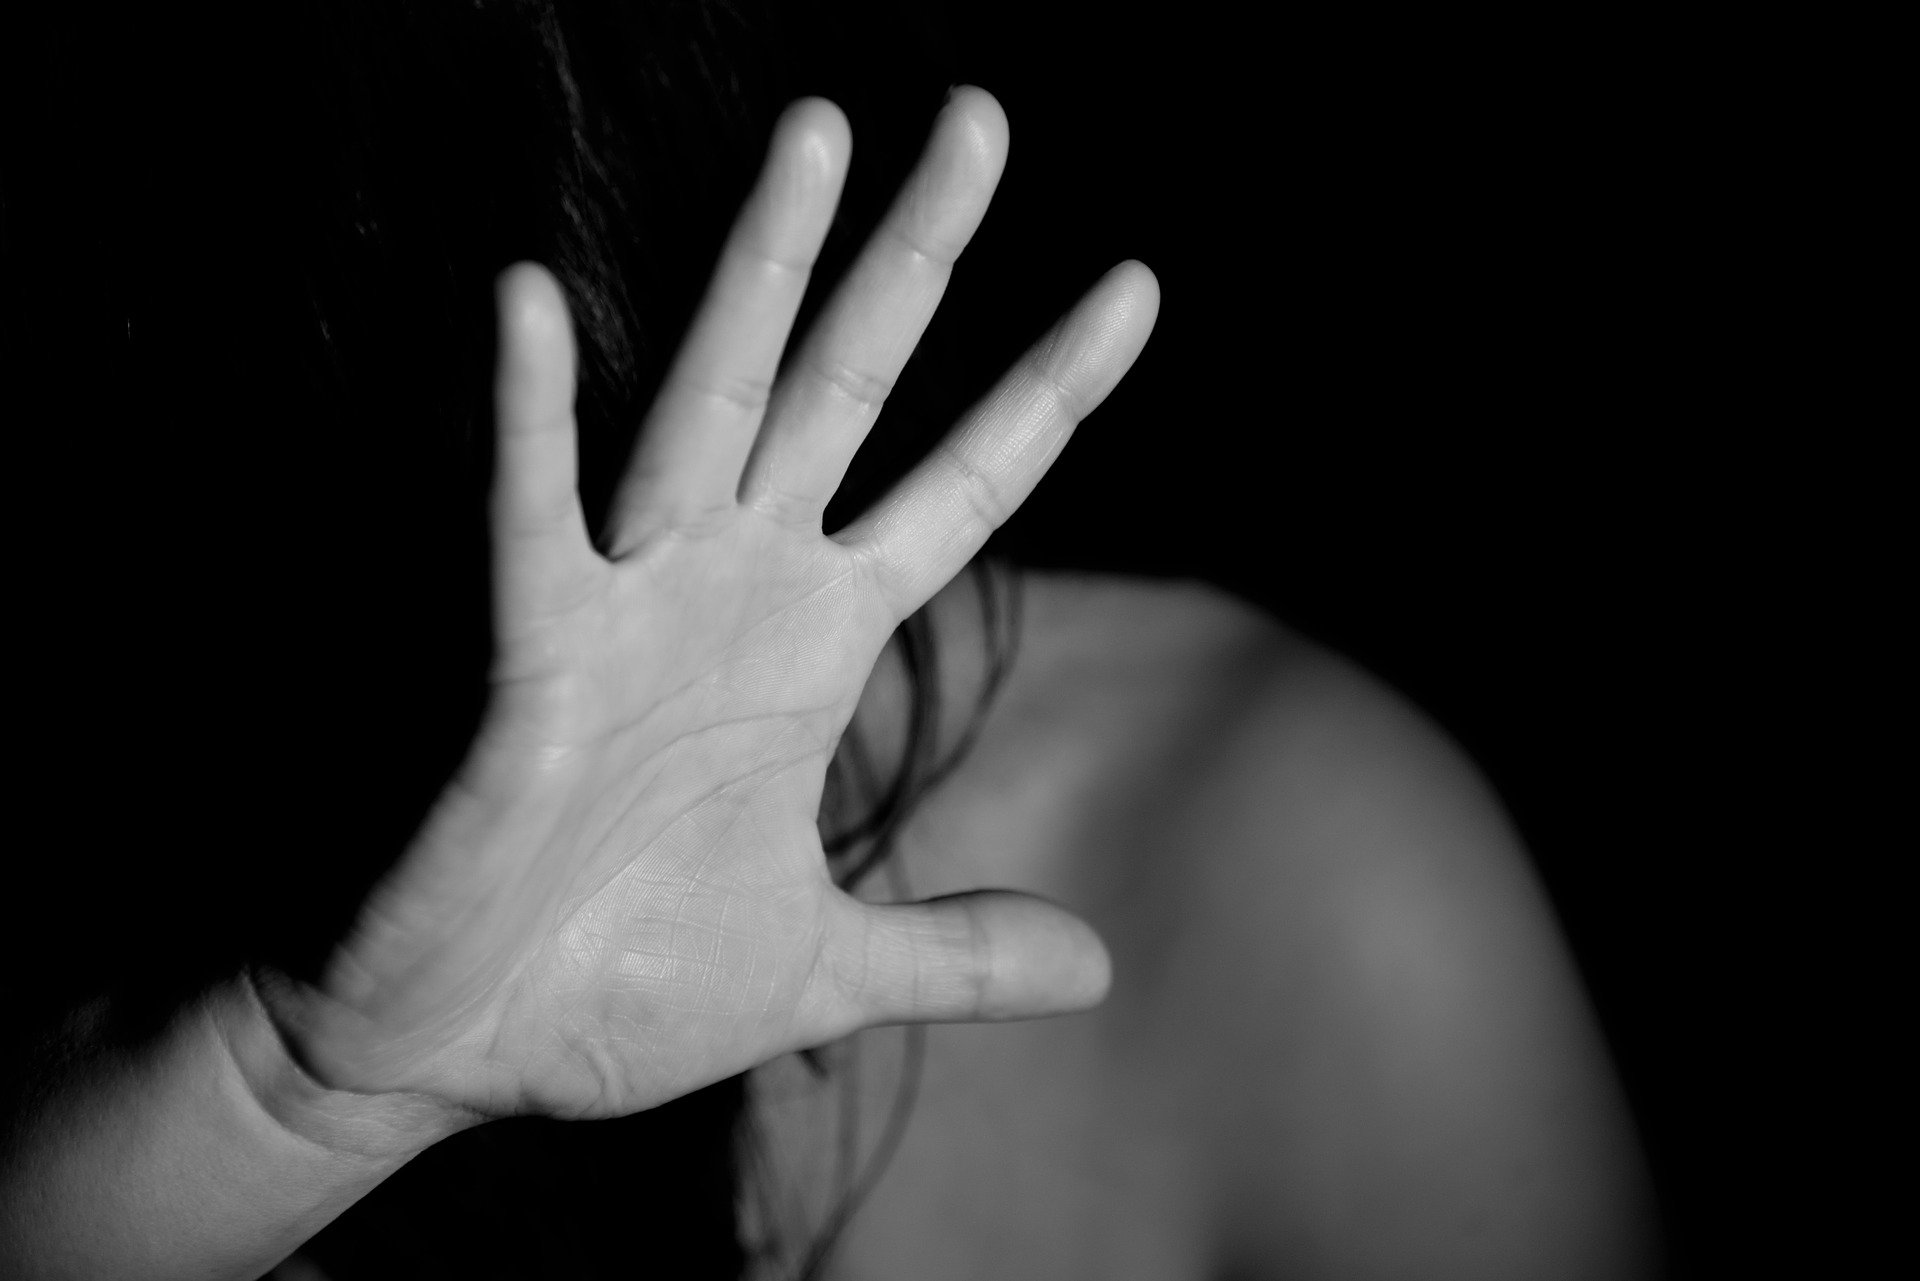 Violenza di genere, negli ultimi 14 anni in Toscana un femminicidio al mese